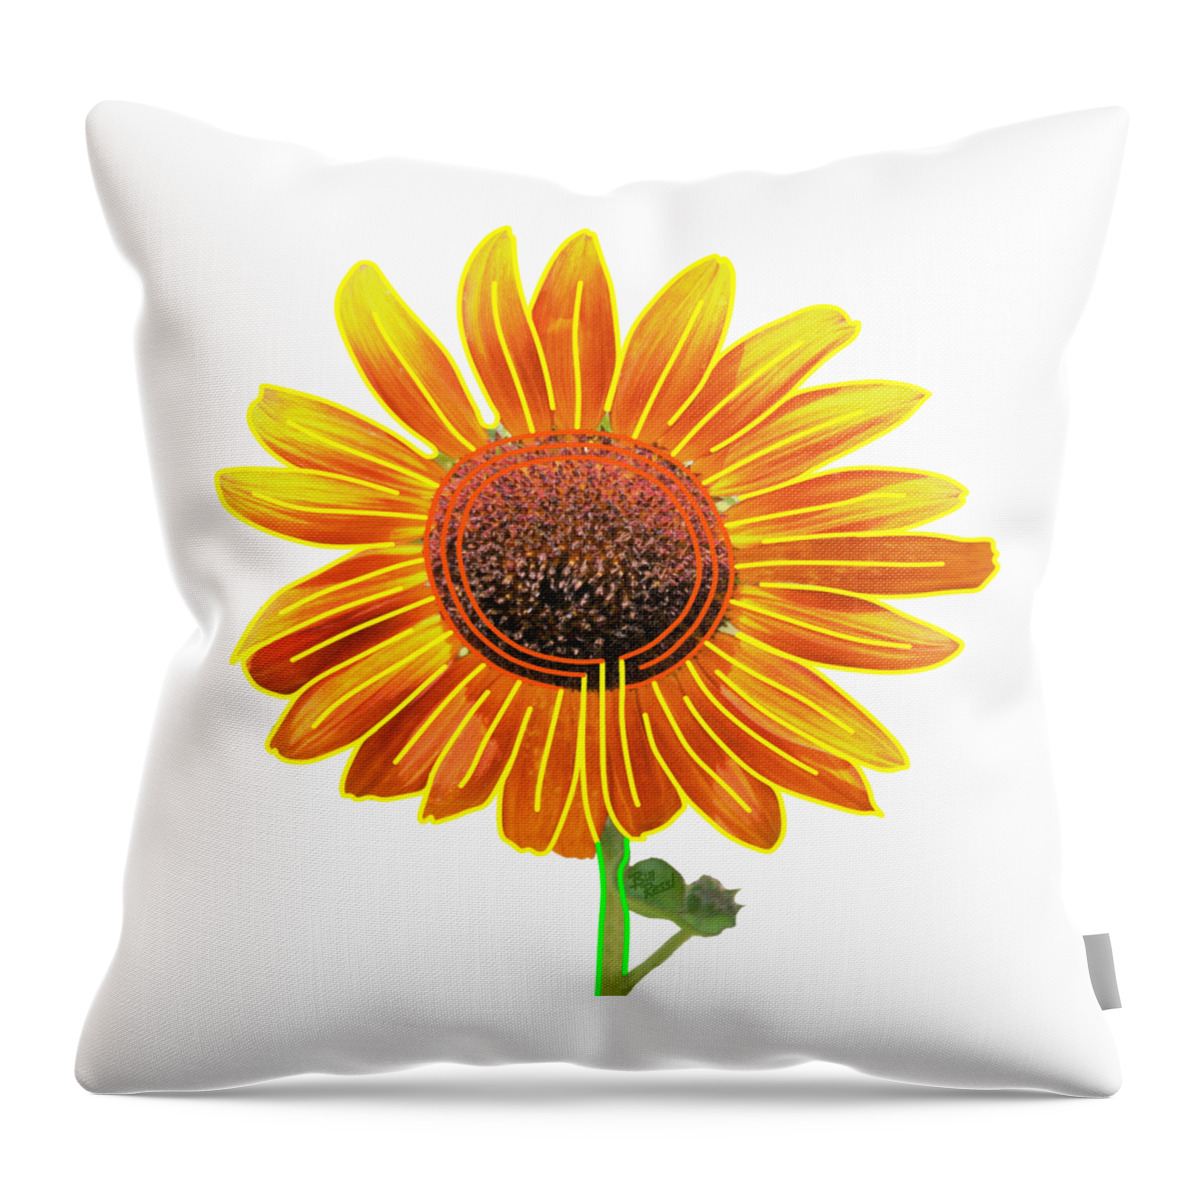 Sunflower Throw Pillow featuring the digital art Sunflower Labyrinth - Eco Art by Bill Ressl